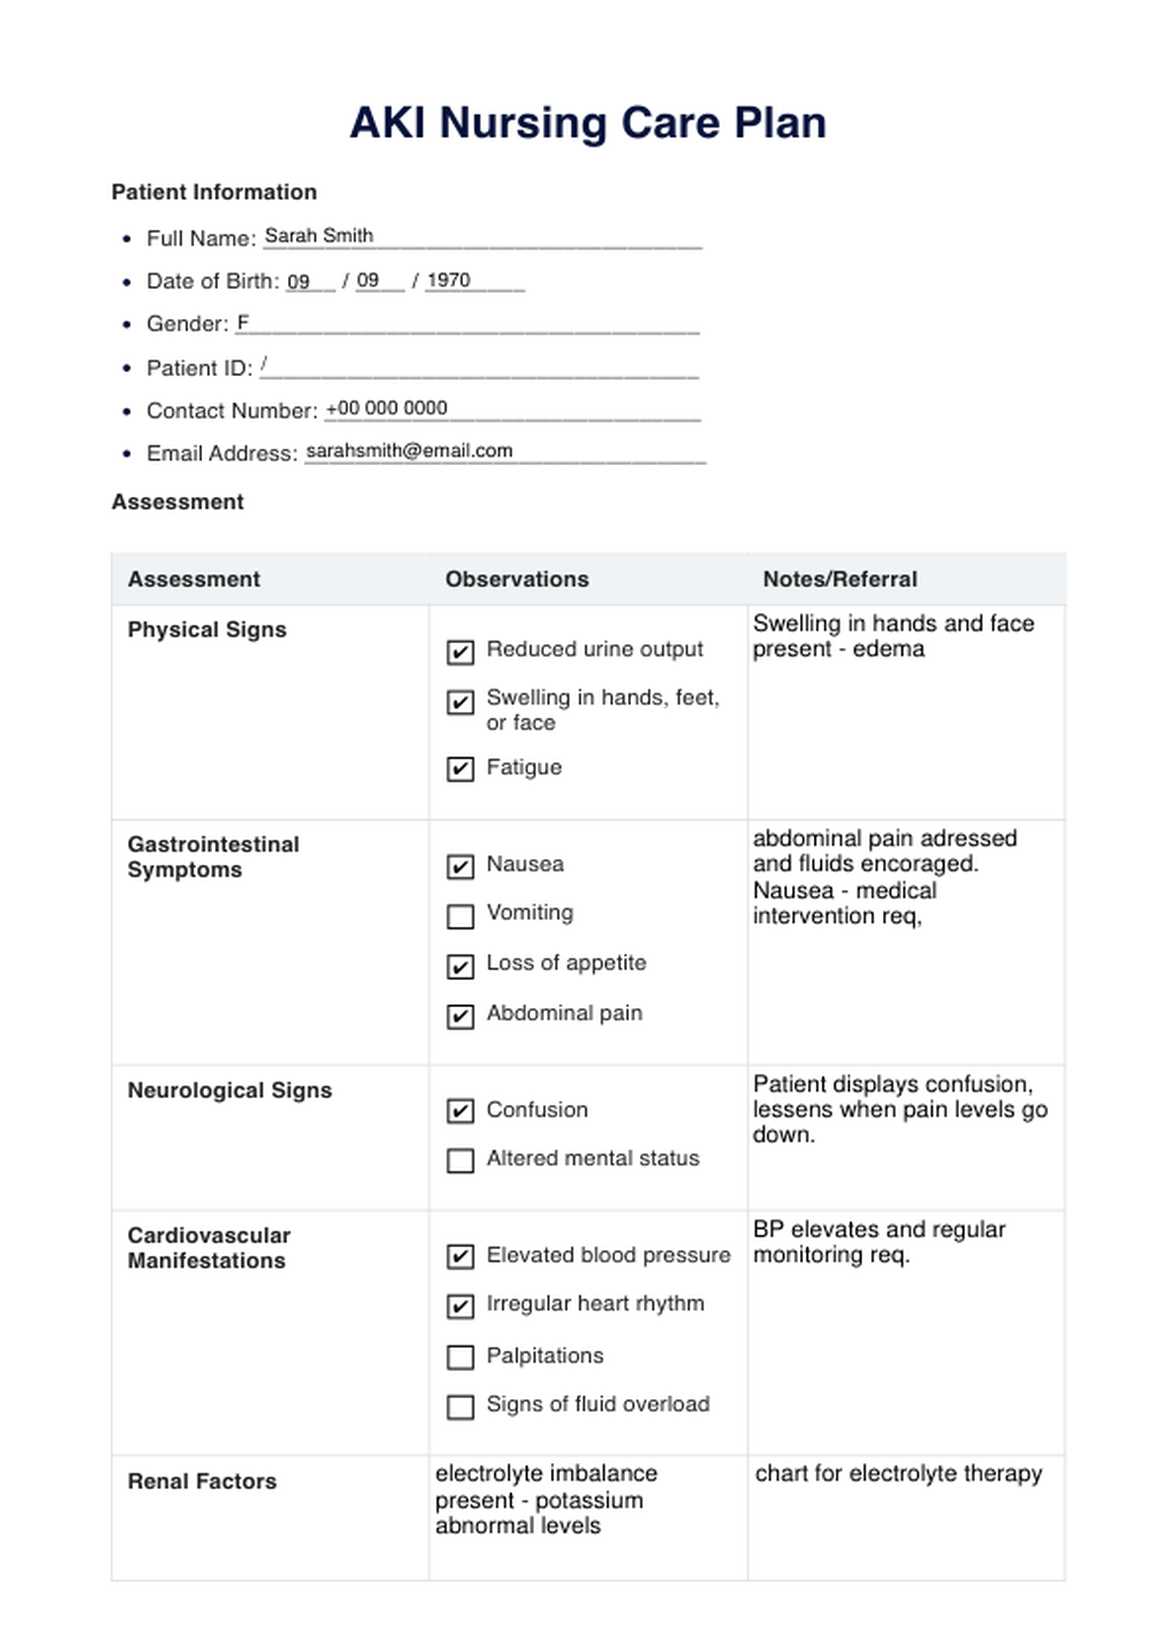 AKI Nursing Care Plan PDF Example